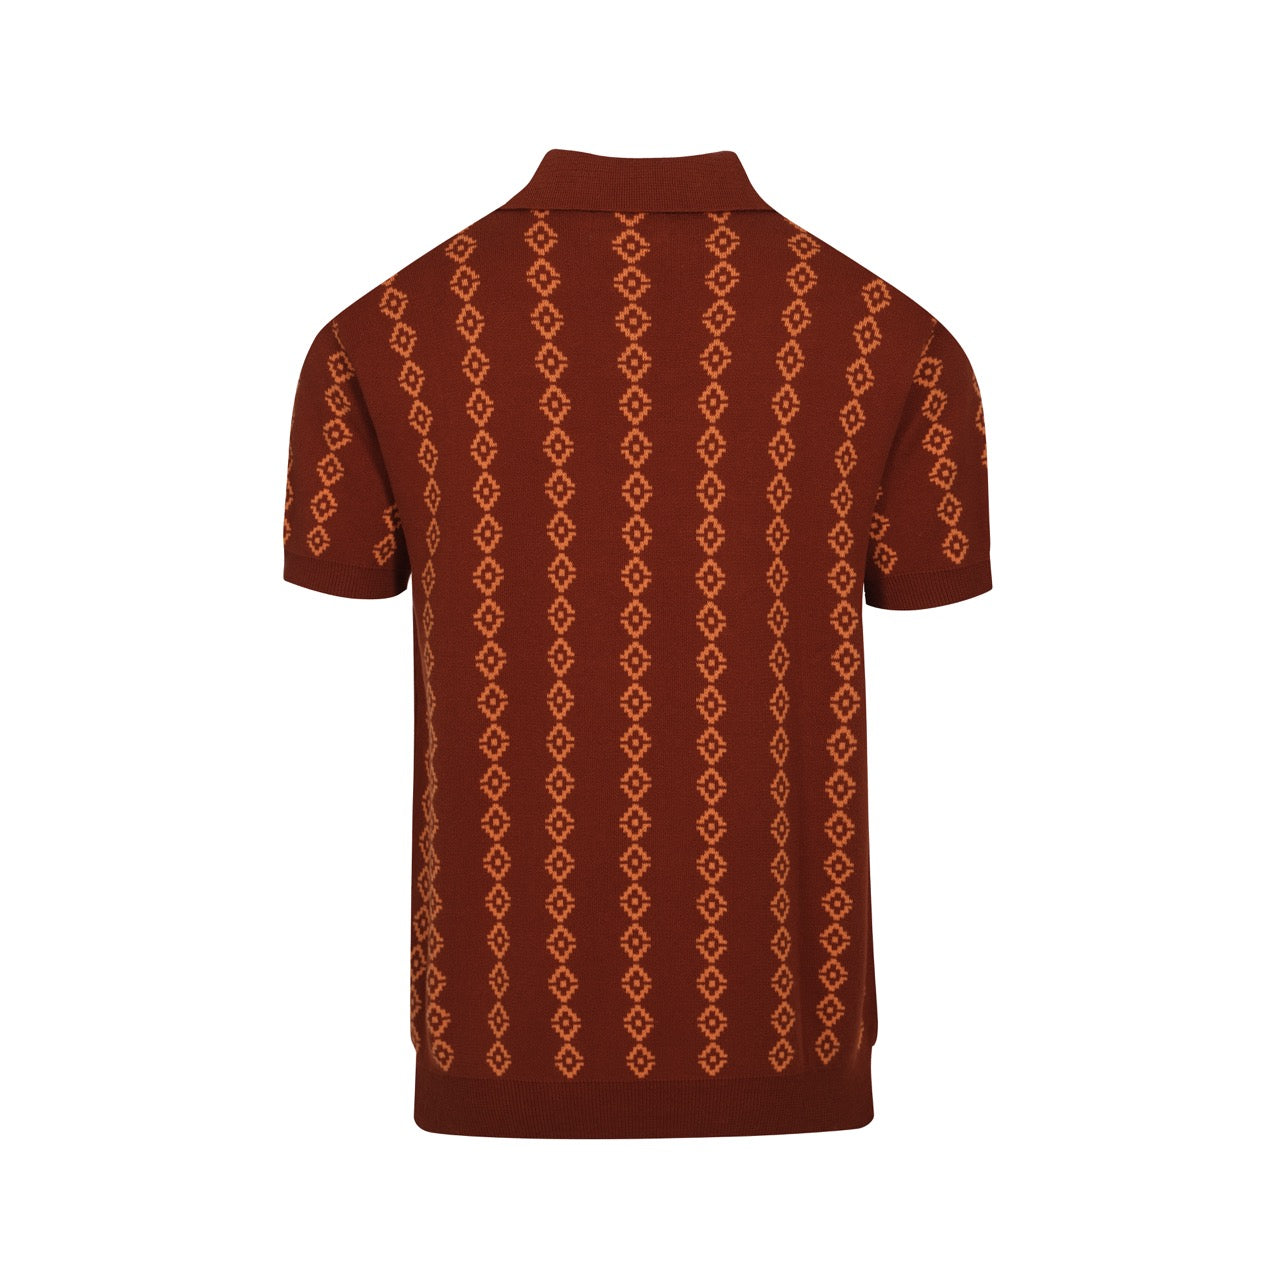 Ανδρικά πλεκτά ρετρό πόλο μπλουζάκια σε στυλ Mod της δεκαετίας του 1960 σε σκούρο καφέ